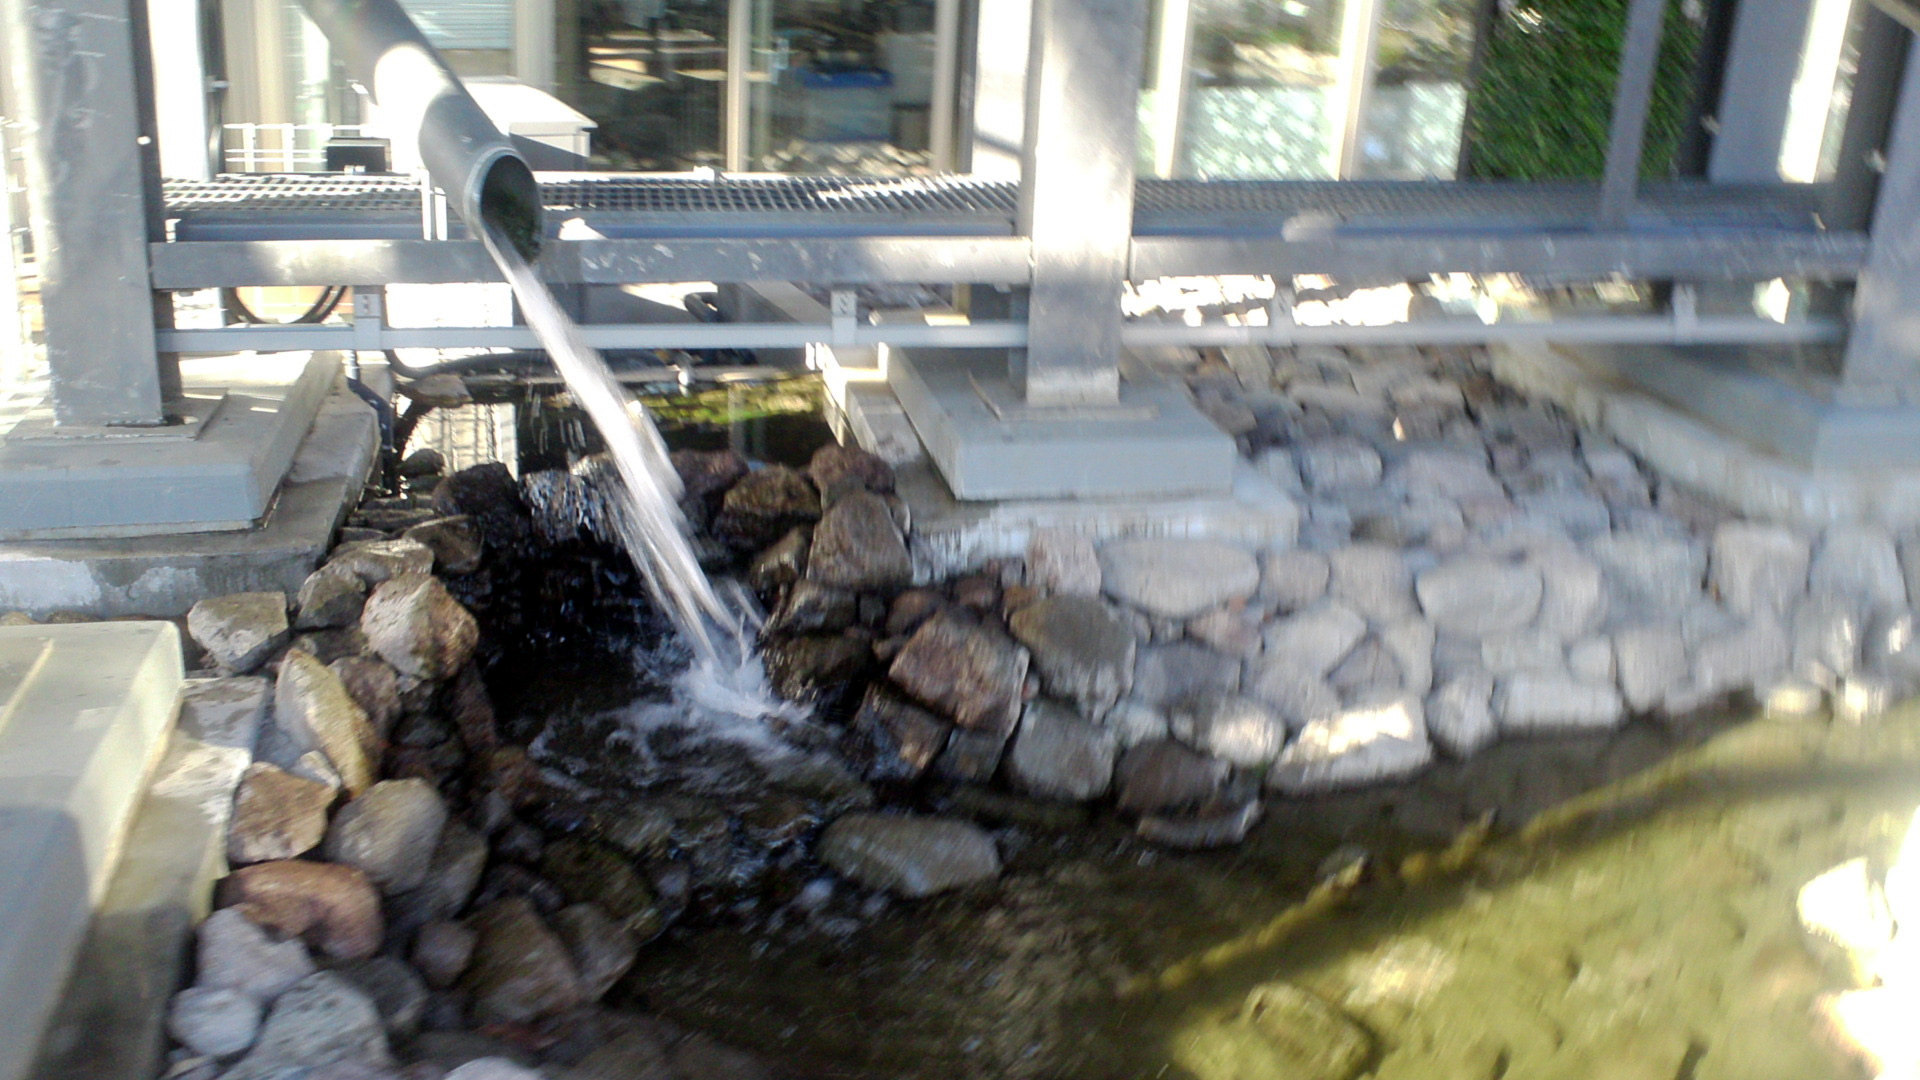 10階から4階まで流れる小川は、わざと水しぶきを響かせて、せせらぎの音を作り出している。ラッパ状の樋が水のしぶき音を反響させている。